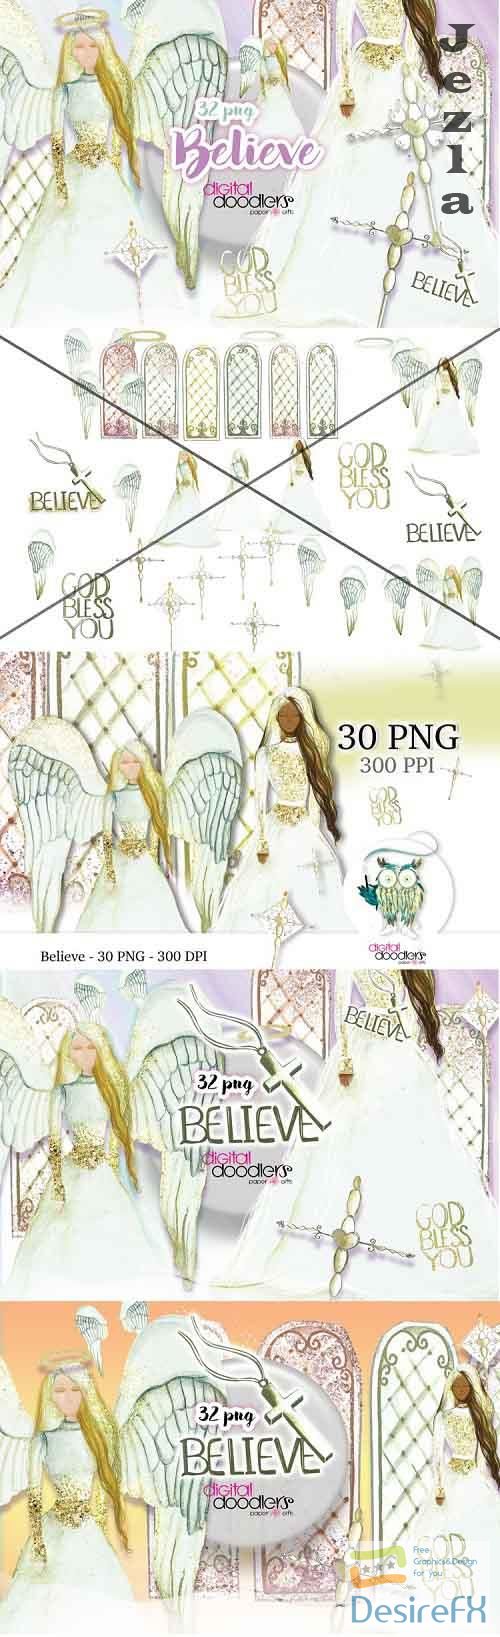 Believe Angel Watercolor Graphics - 254940